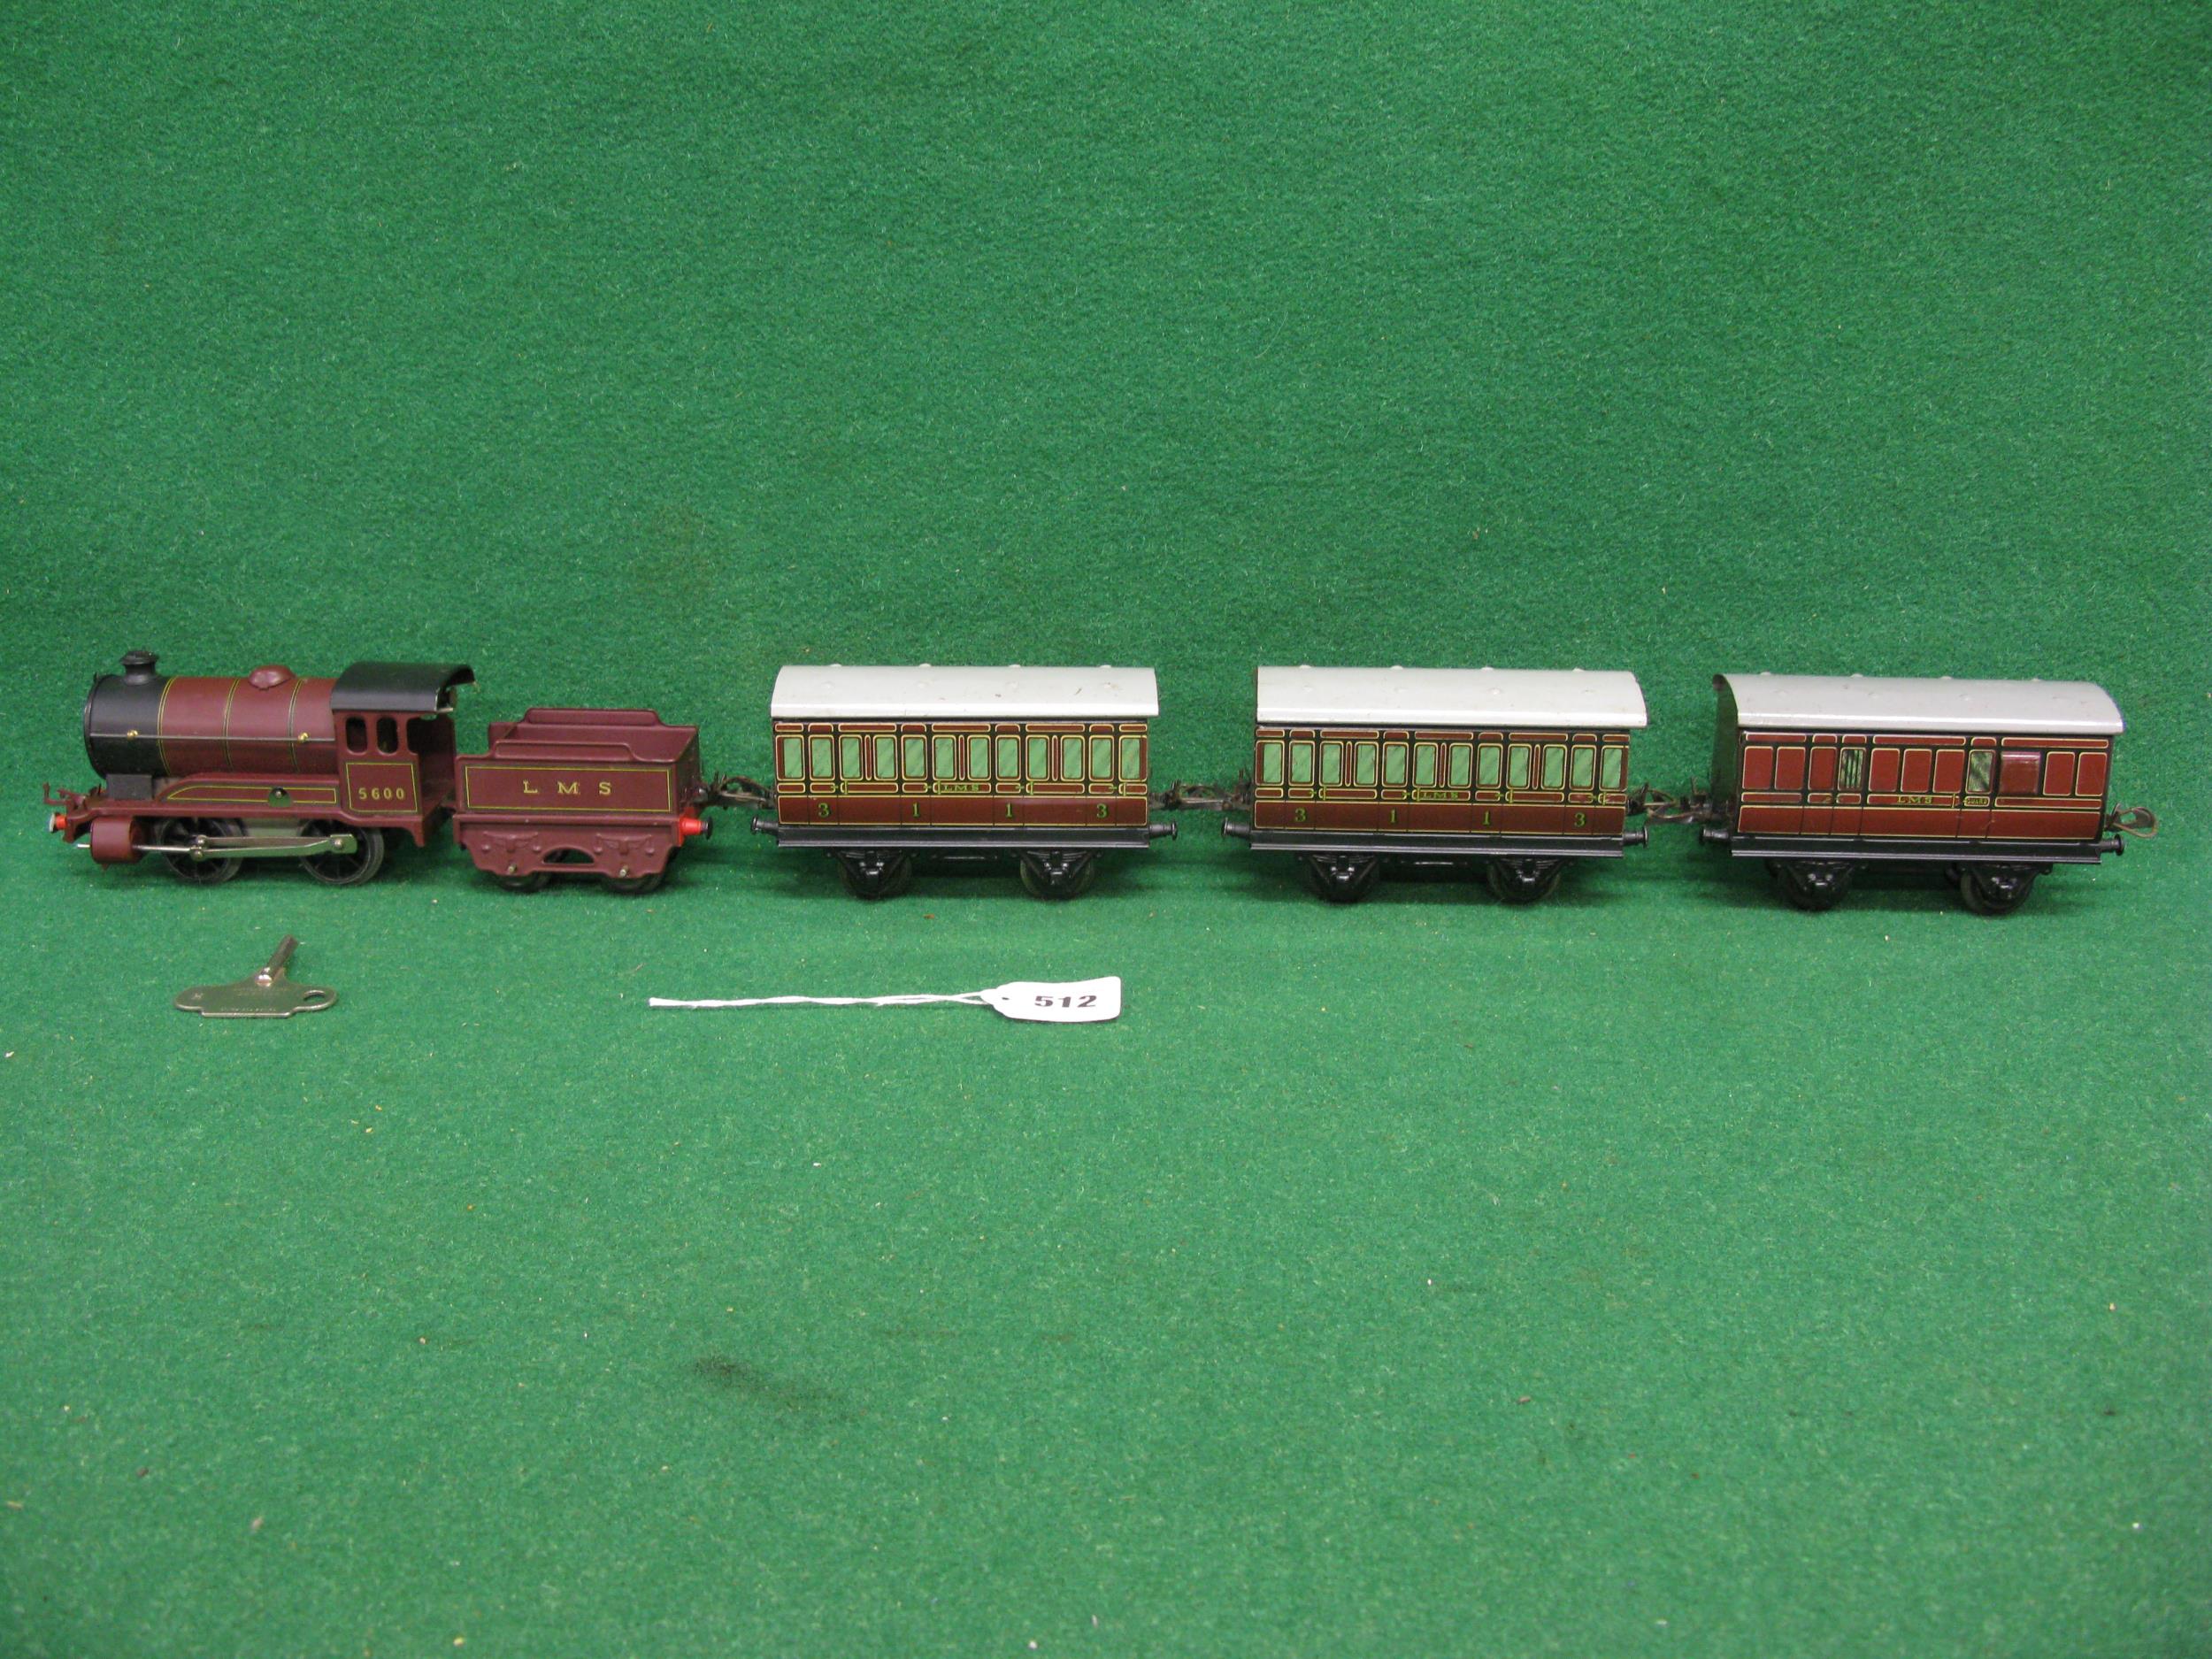 Post war boxed Hornby O gauge clockwork train set to comprise: 501 Type 0-4-0 tender locomotive - Image 3 of 6